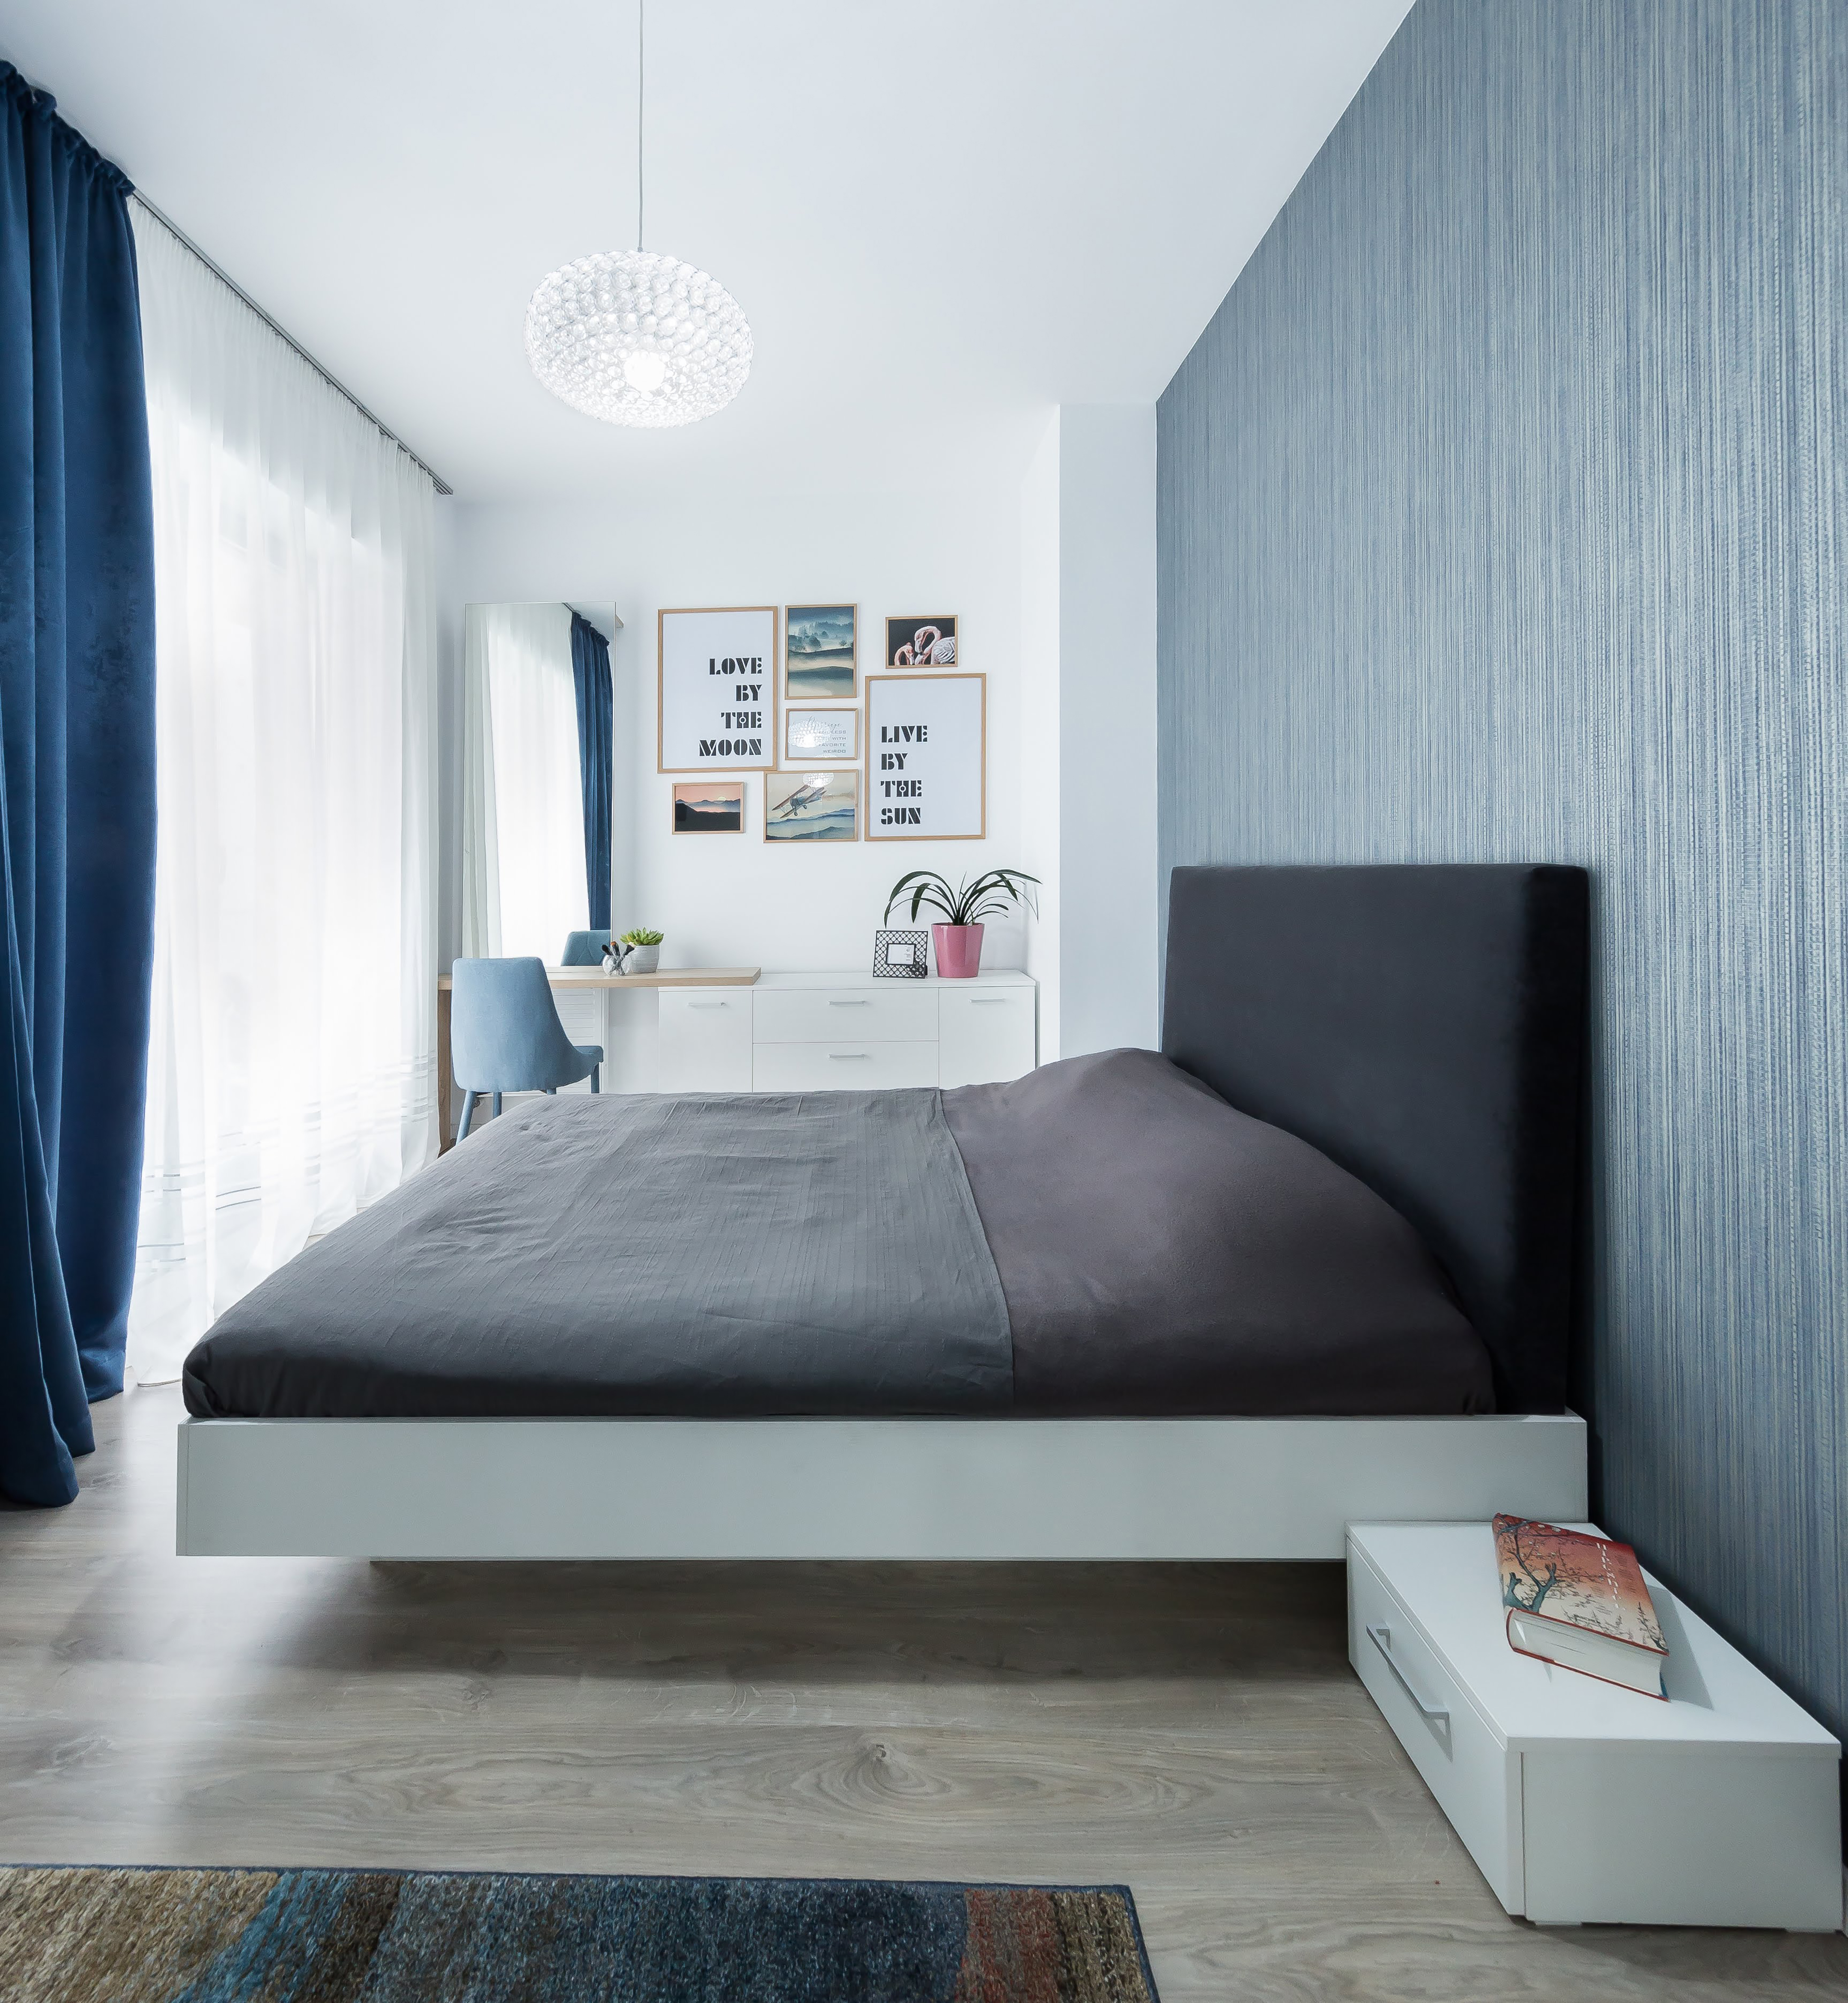 El sutil azul del dormitorio no solo resulta relajante, sino que también matiza la luz. La cama, aunque es grande, tiene estilo y es atemporal gracias al notable gris oscuro